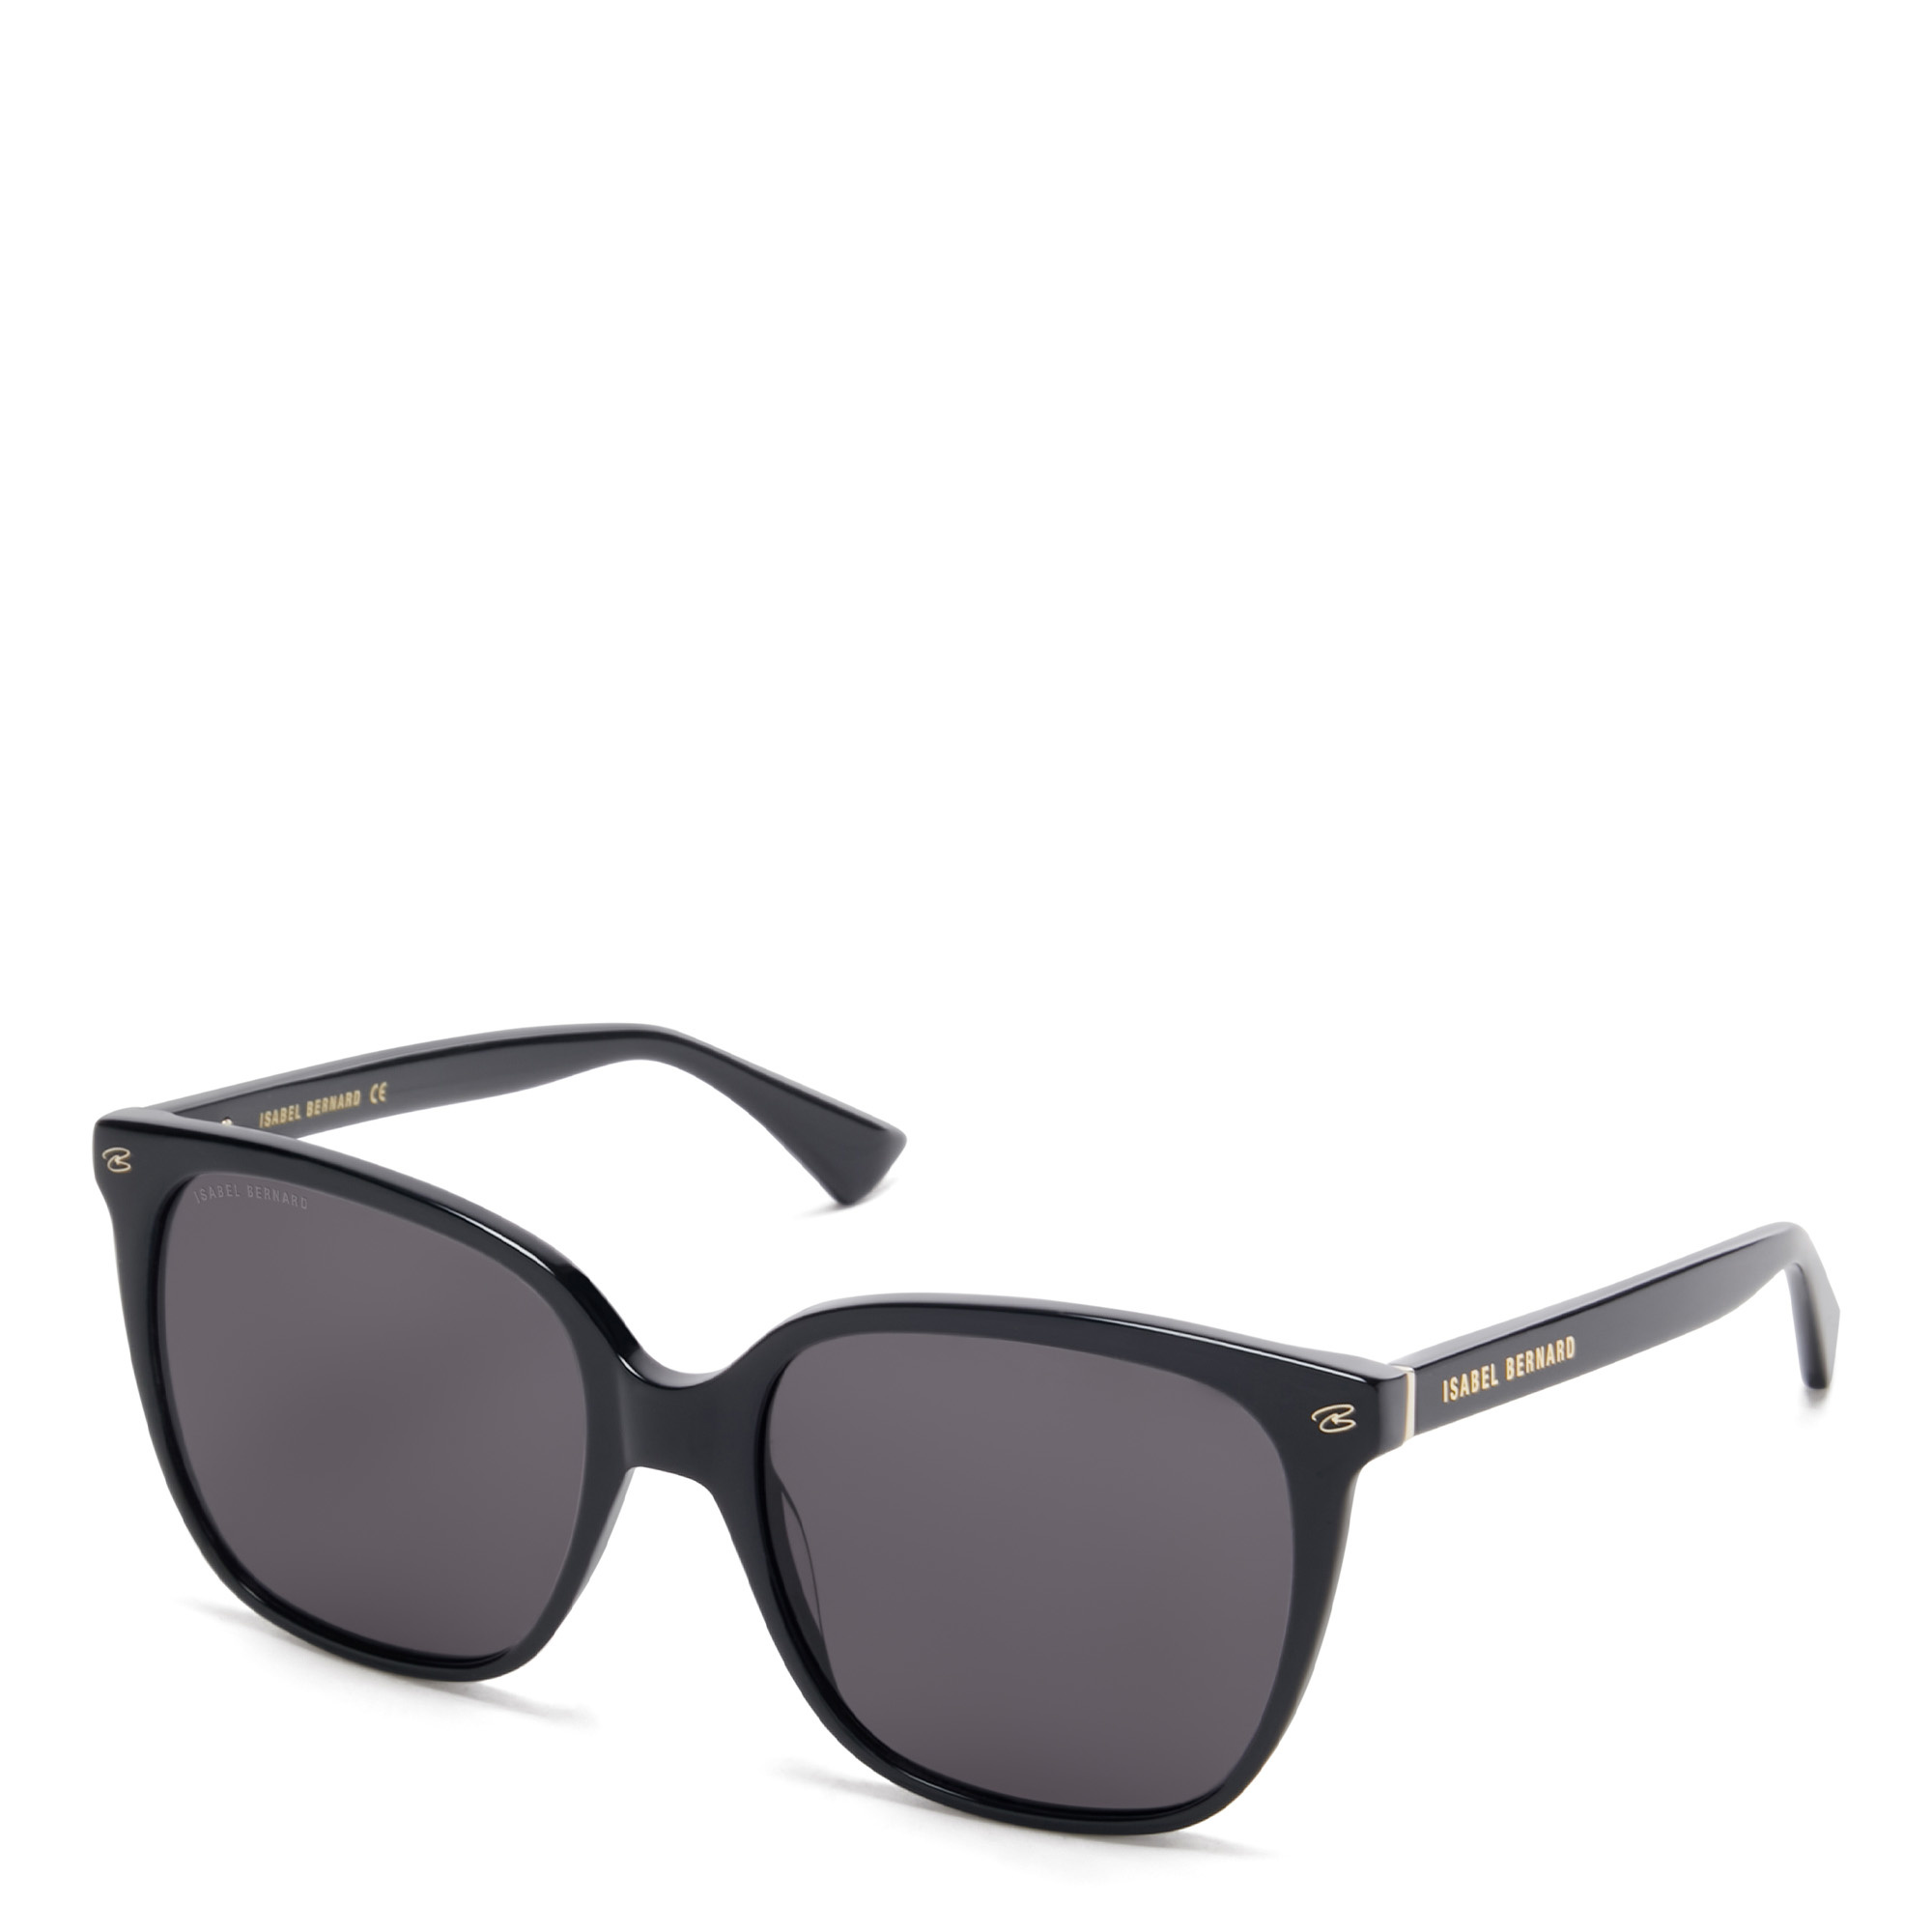 Eckige Sonnenbrille mit schwarzer Azetatfassung - Luxus